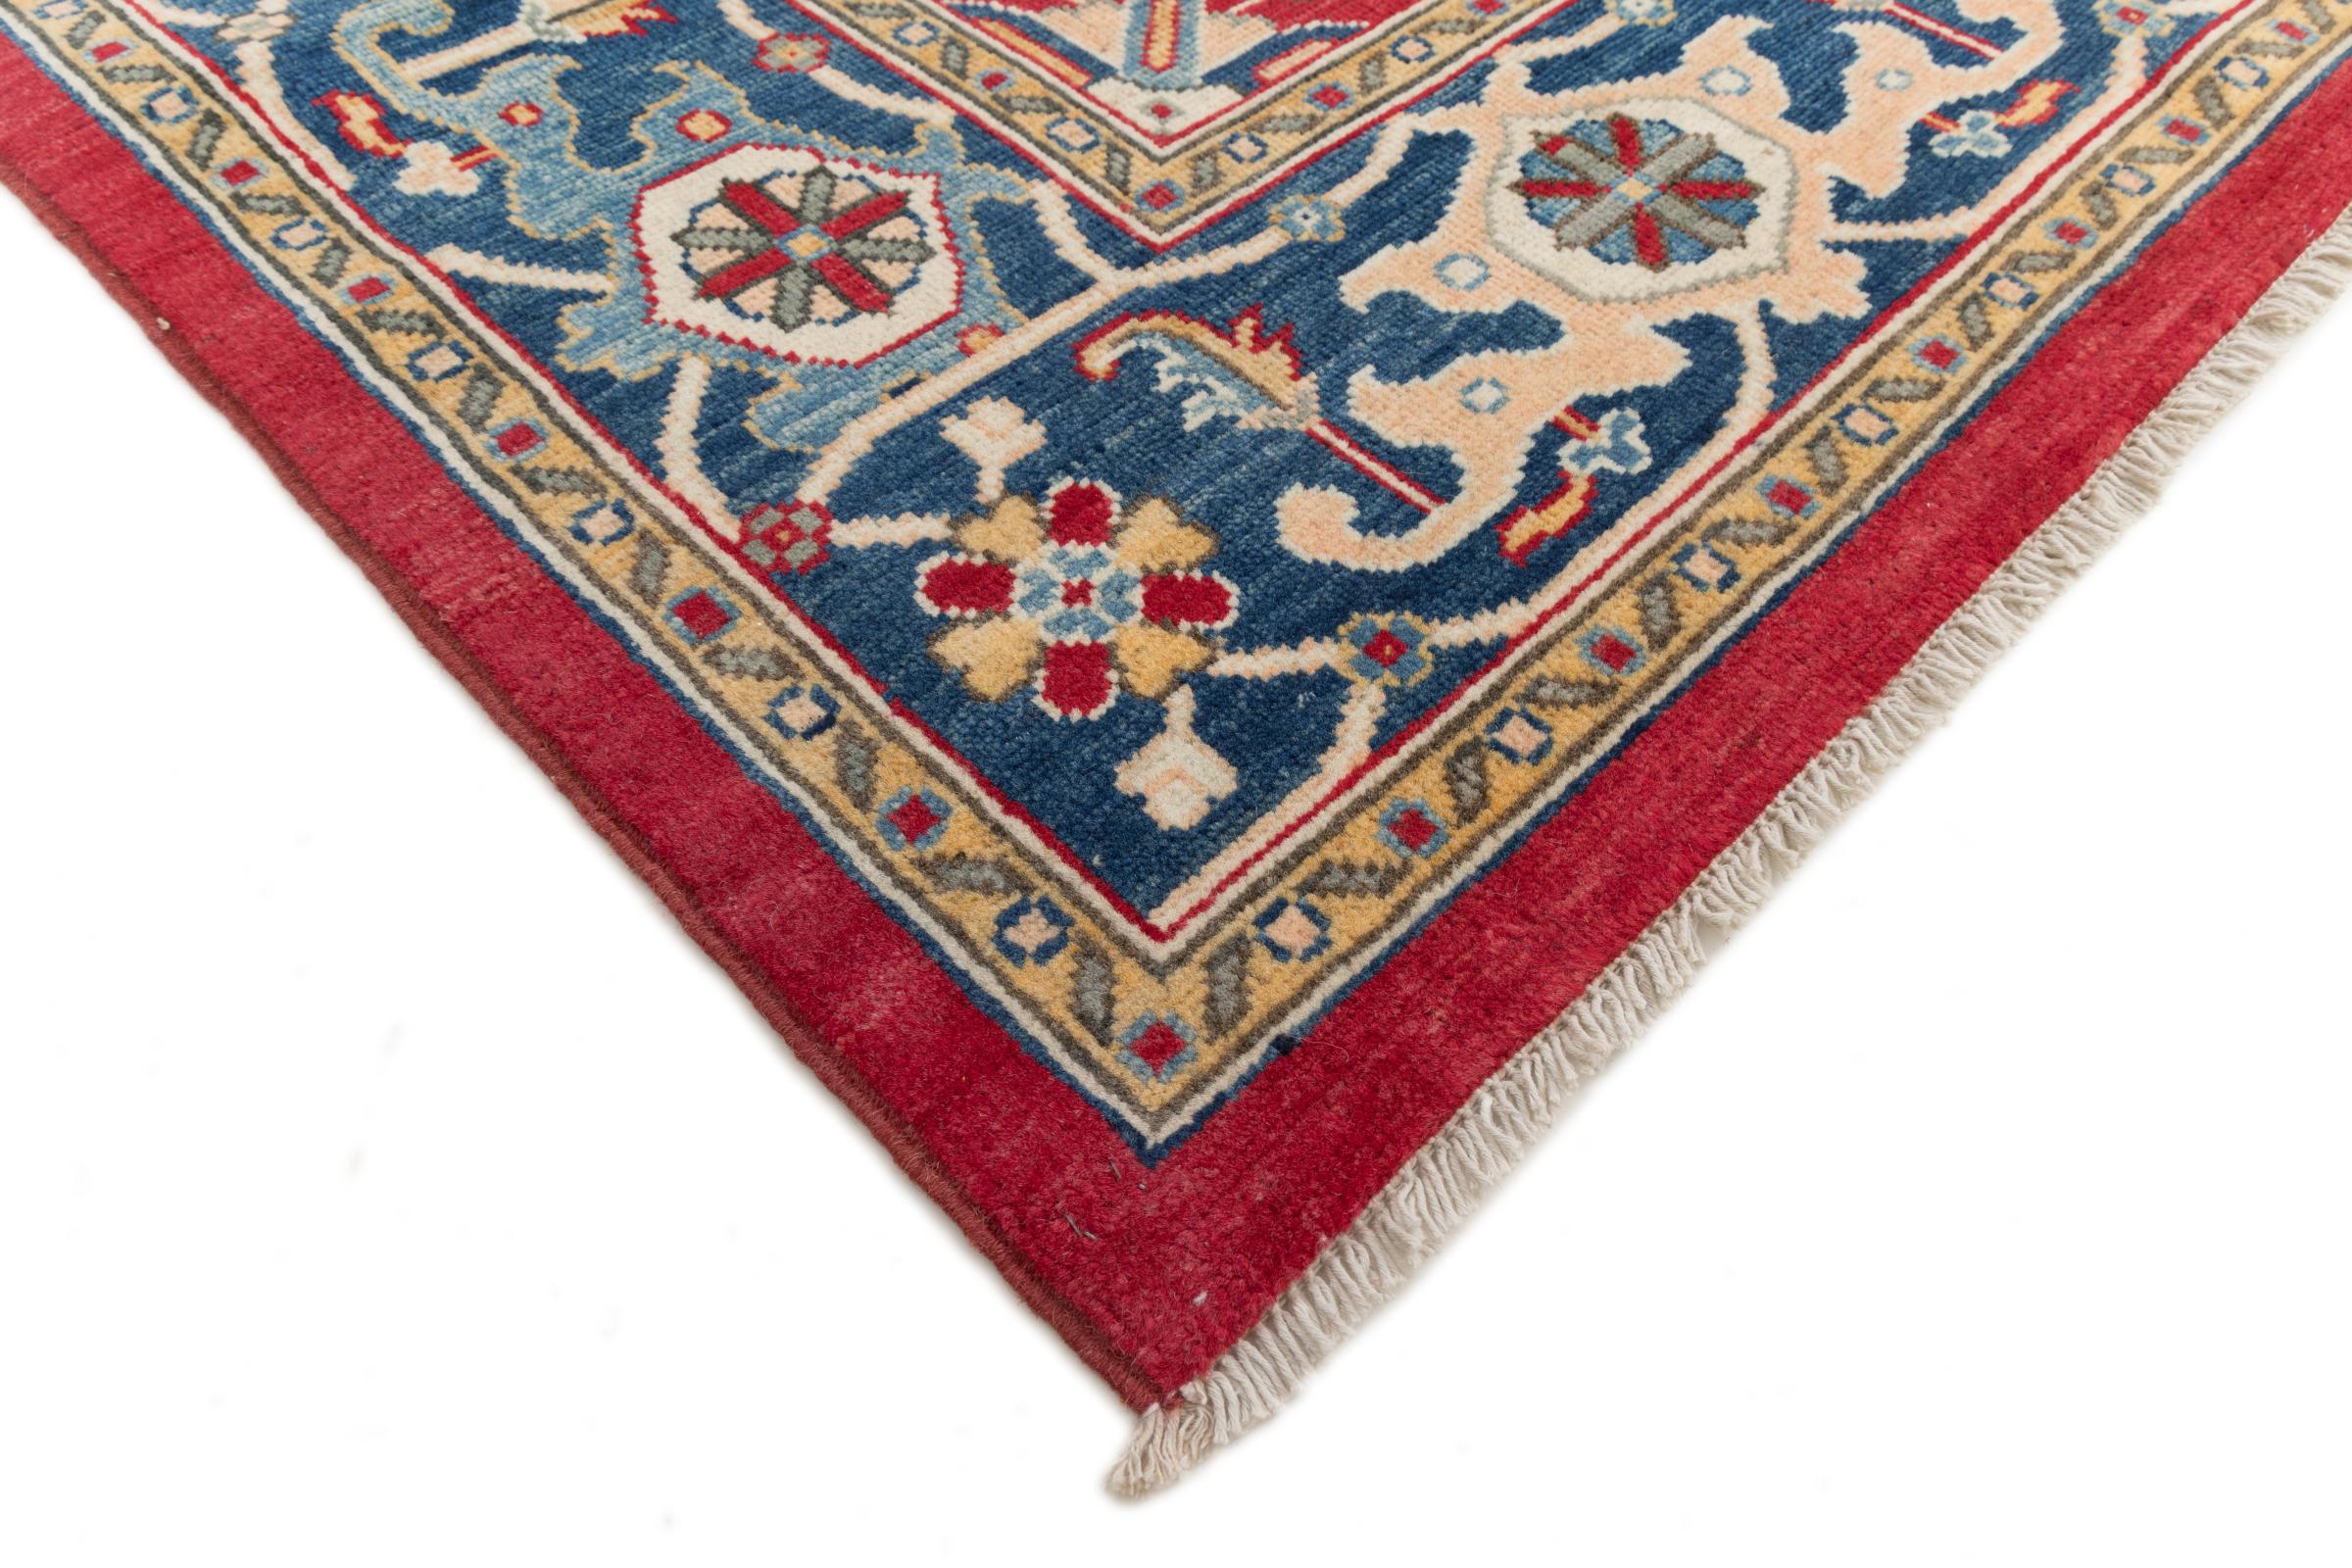 Kazak 297x193 ID235819 | NainTrading: Oriental Carpets in 300x200